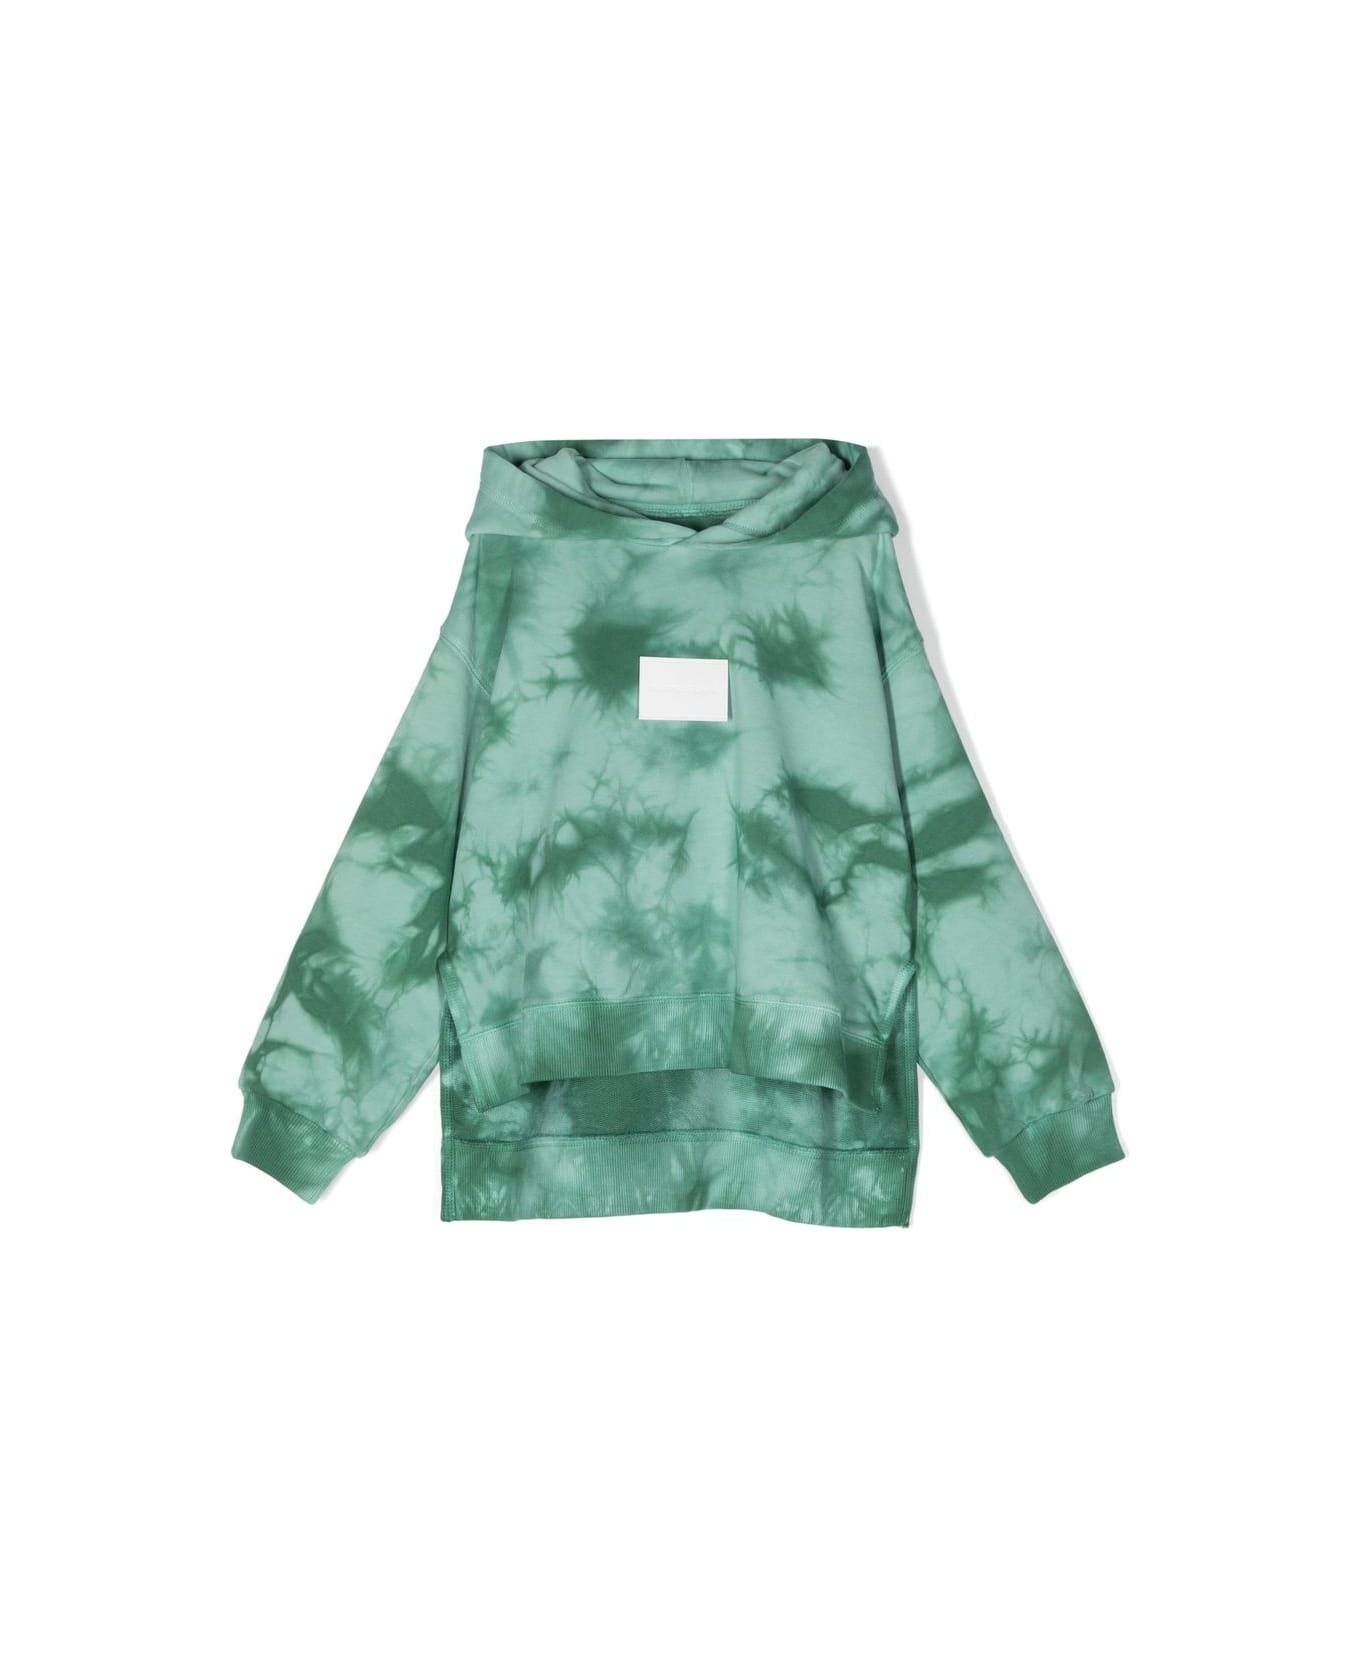 MM6 Maison Margiela Sweatshirt With Tie-dye Pattern - Green